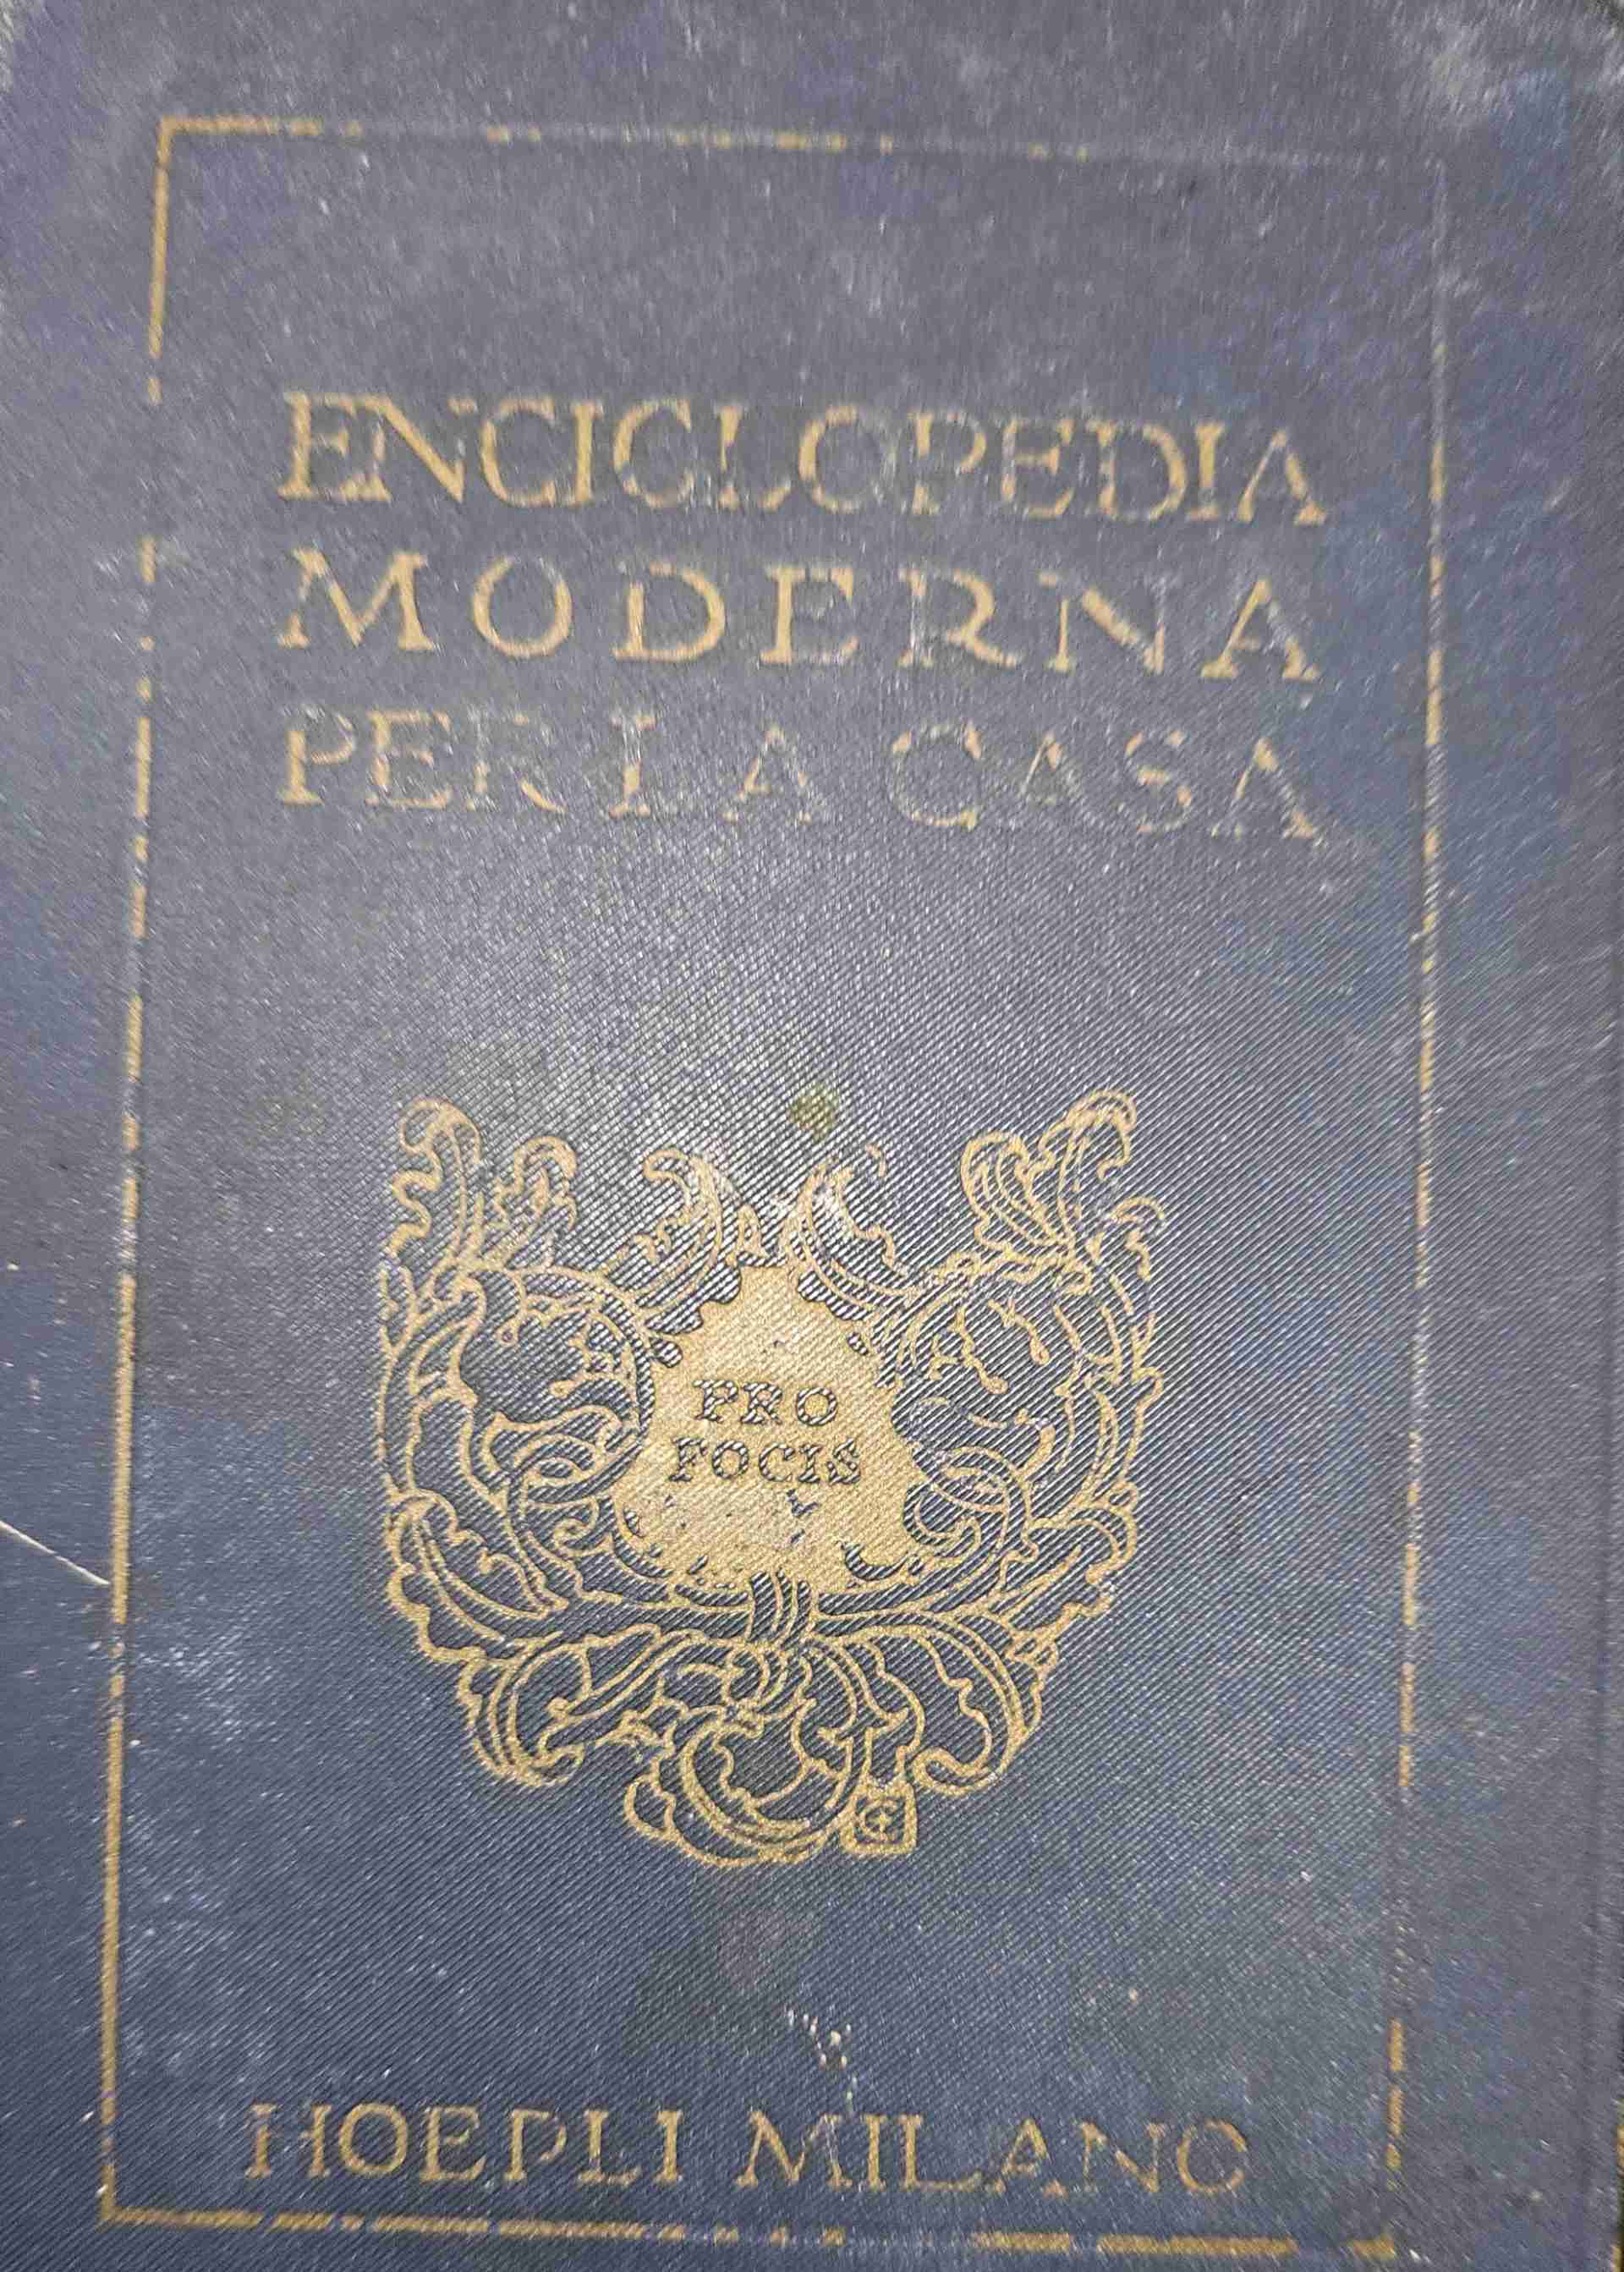 Enciclopedia moderna per la casa -ottava edizione libro usato